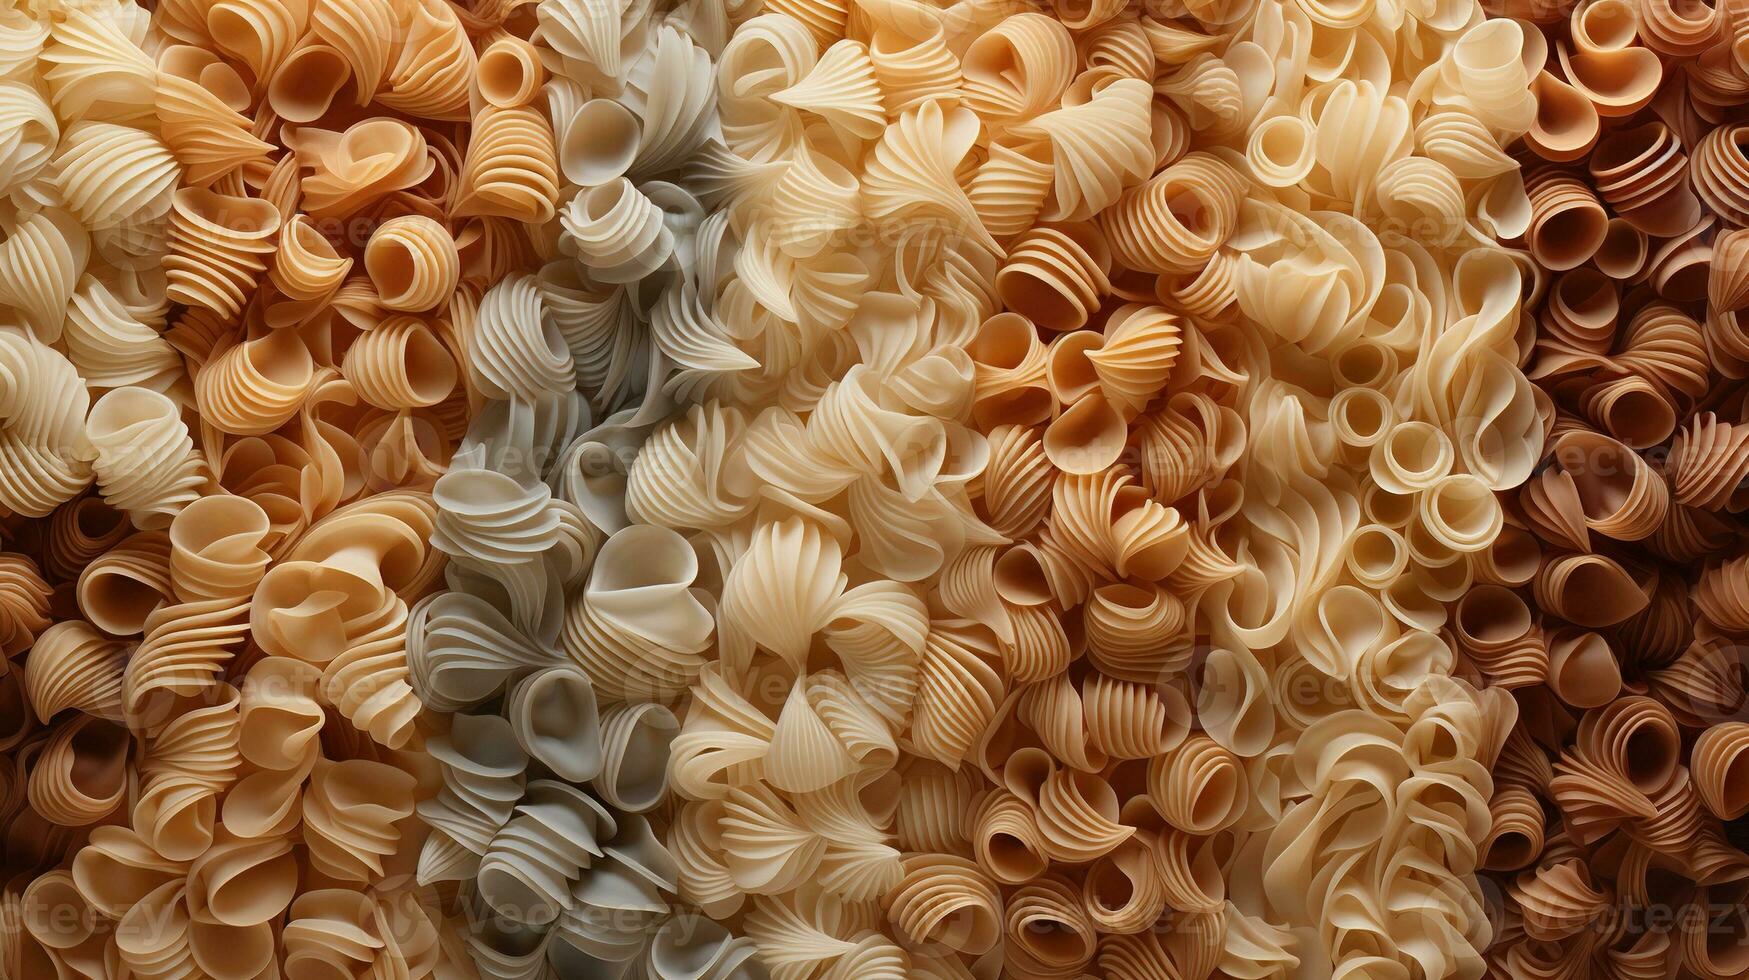 generativ ai, mängd av typer, färger och former av italiensk pasta, textur bakgrund foto